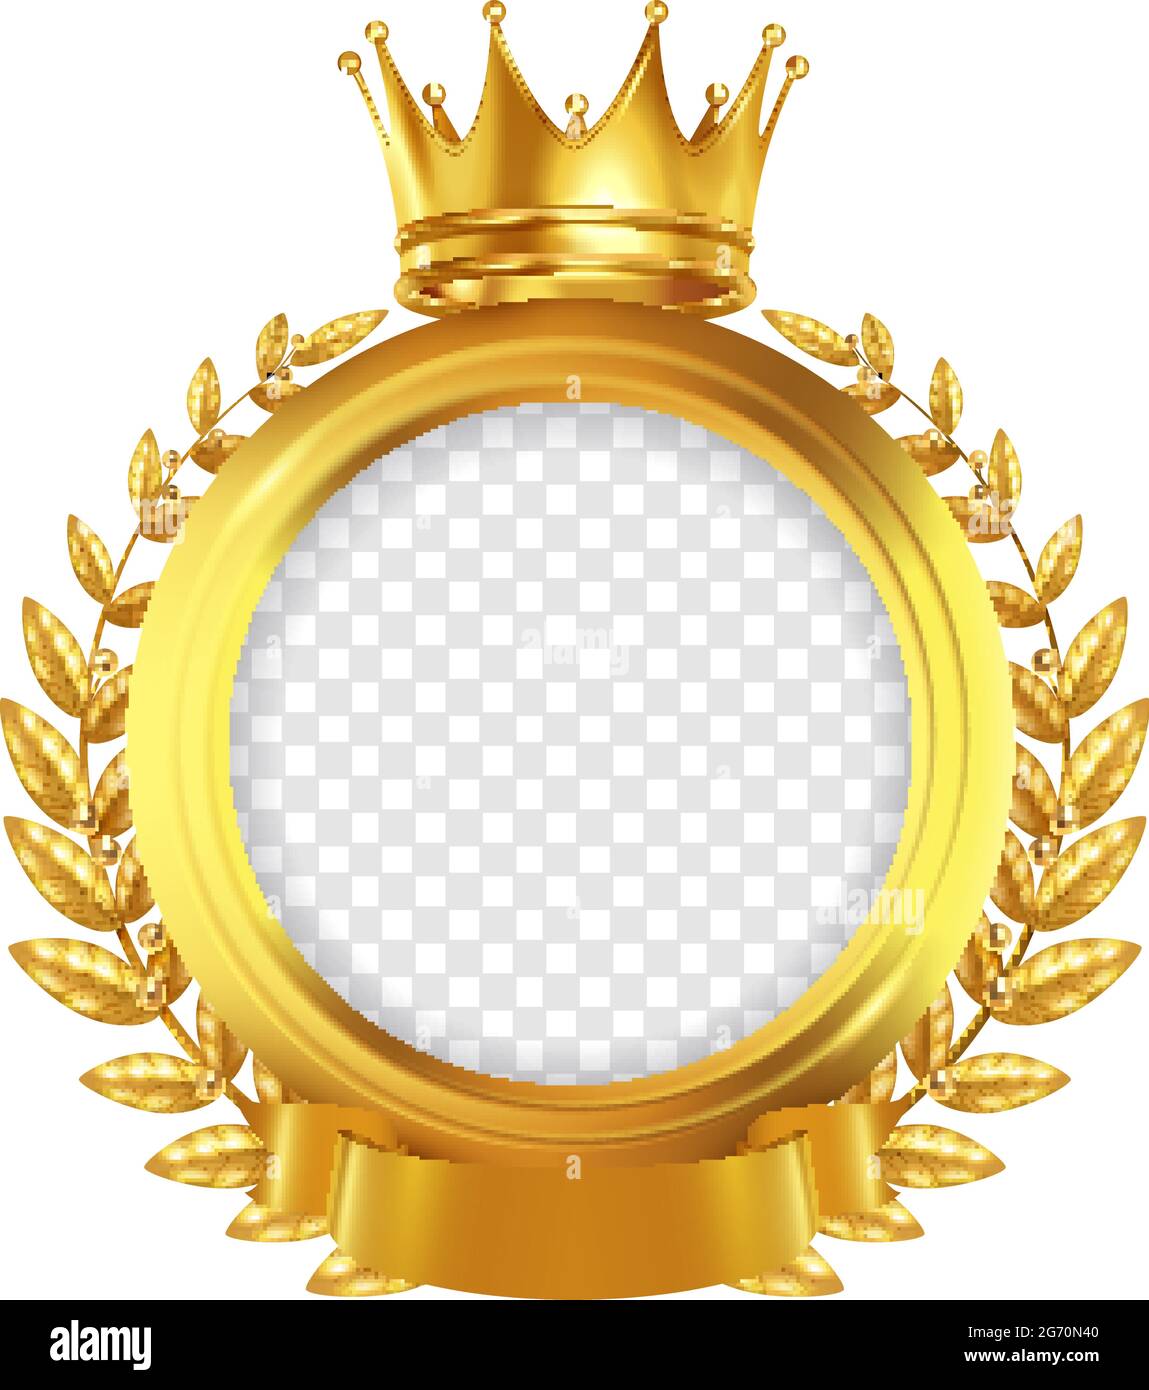 Cadre rond doré décoré de ruban pour couronne et couronne de conception  réaliste sur fond blanc illustration vectorielle Image Vectorielle Stock -  Alamy